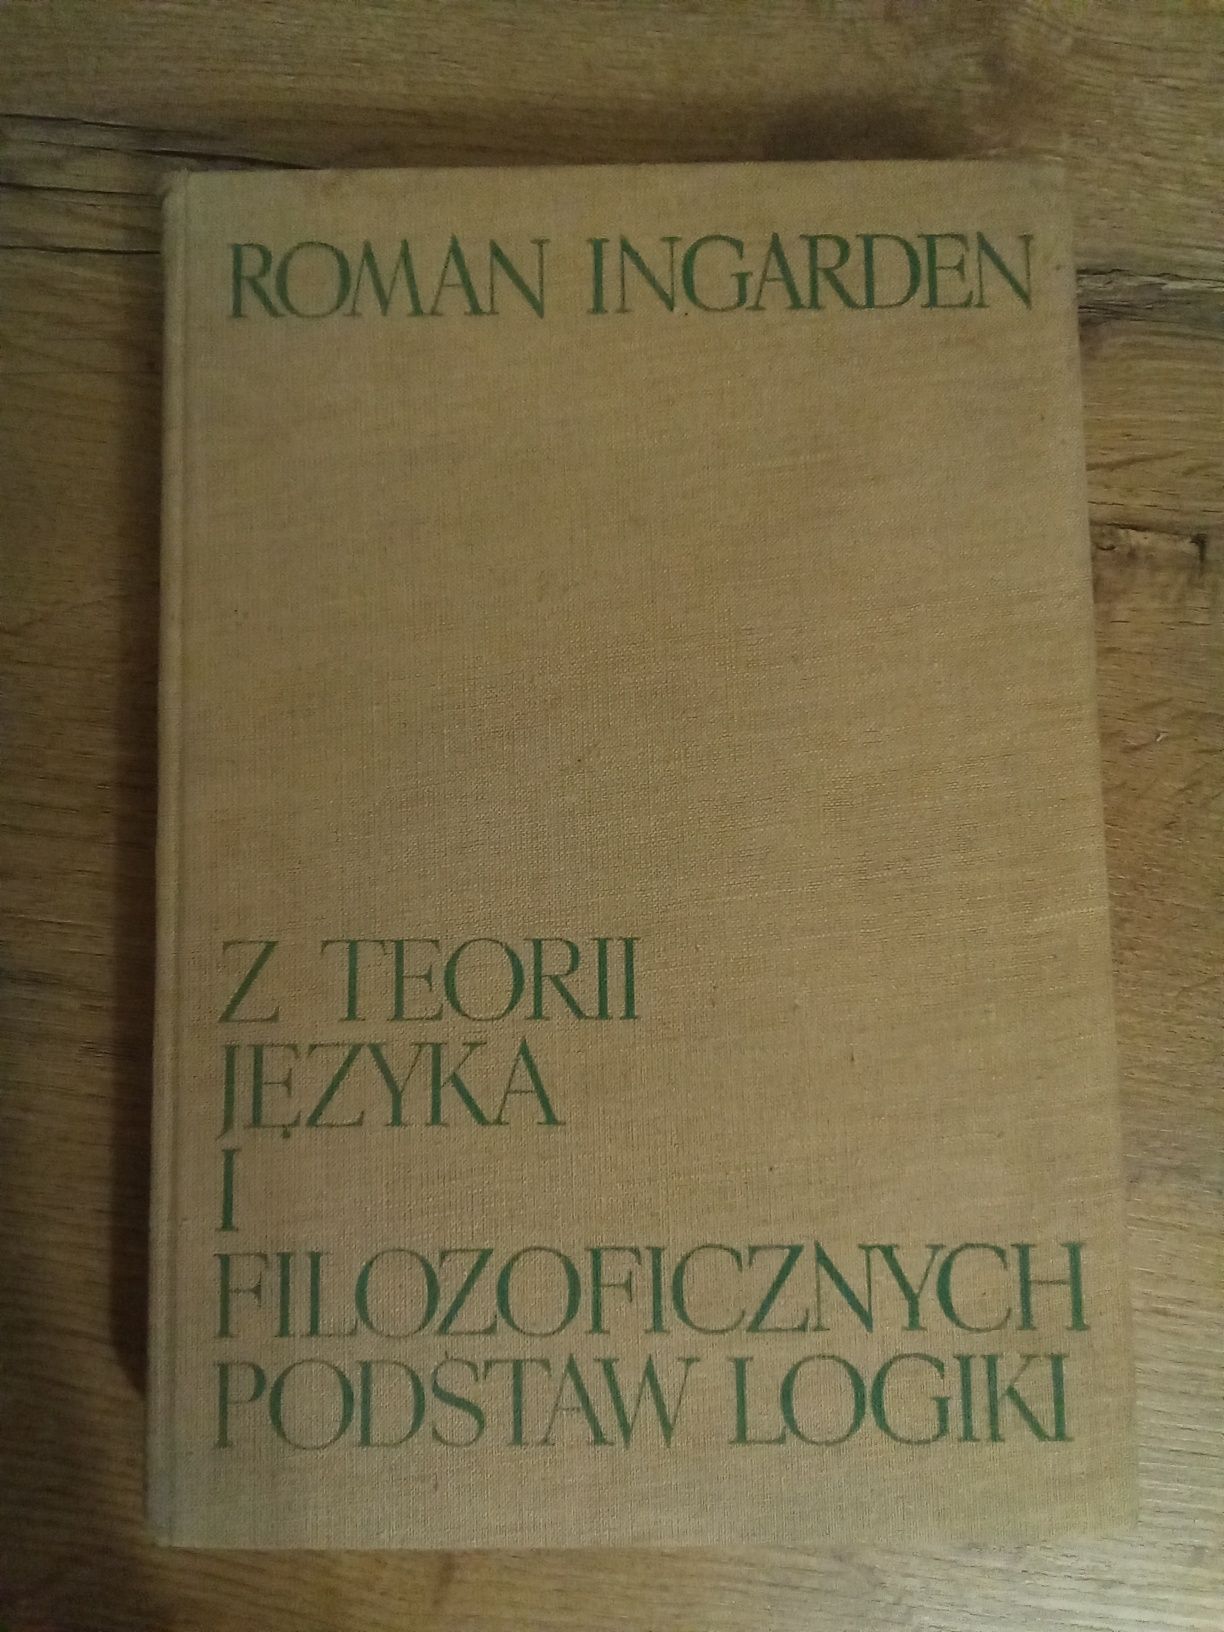 Z teorii języka i filozoficznych podstaw logiki Roman Ingarden